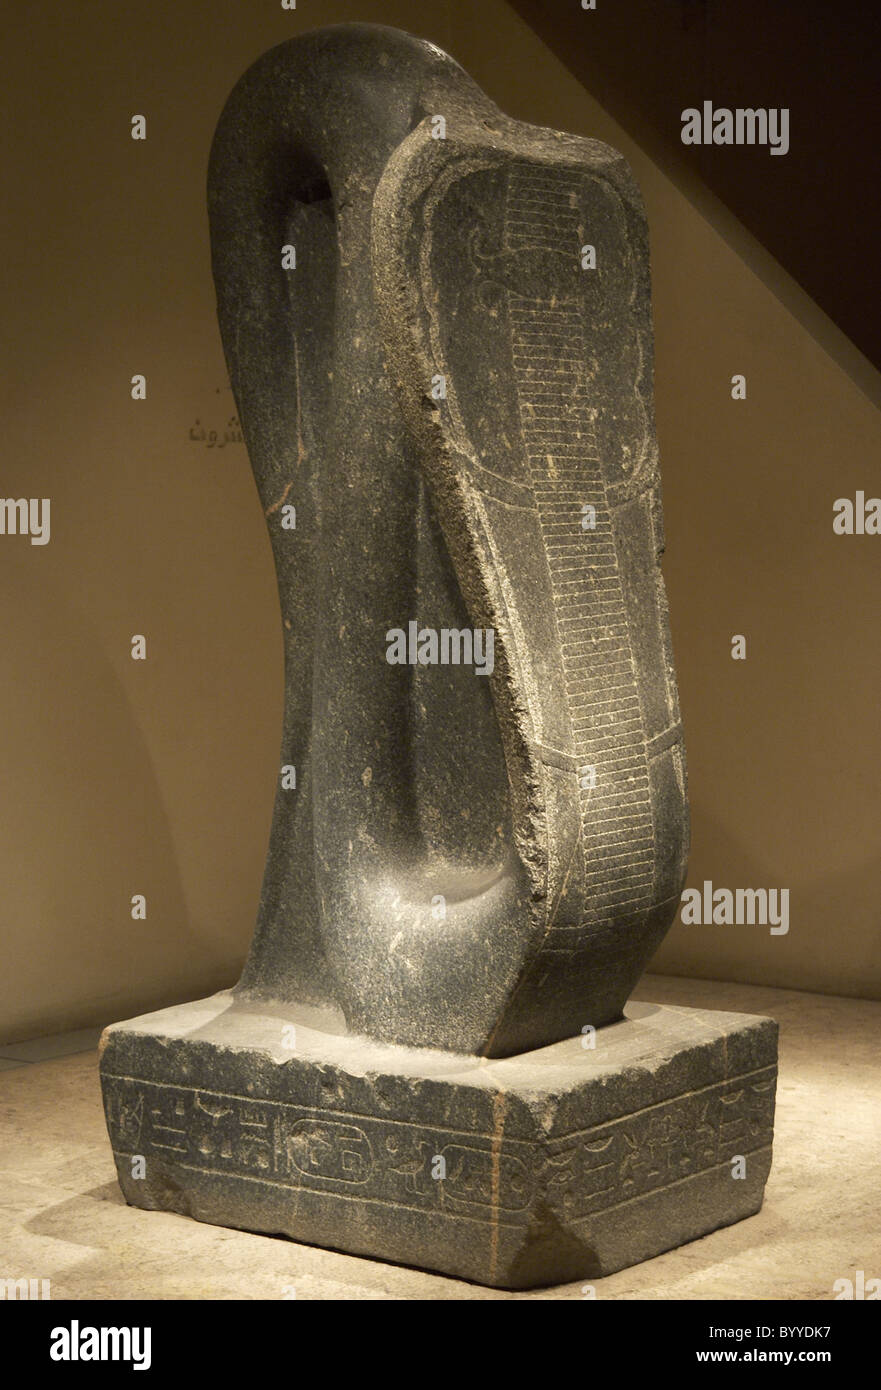 El arte egipcio Amon-Ra de Cobra. Reinado de los faraones nubios. 25ª dinastía. Tercer Periodo Intermedio. Museo de Luxor. Egipto. Foto de stock